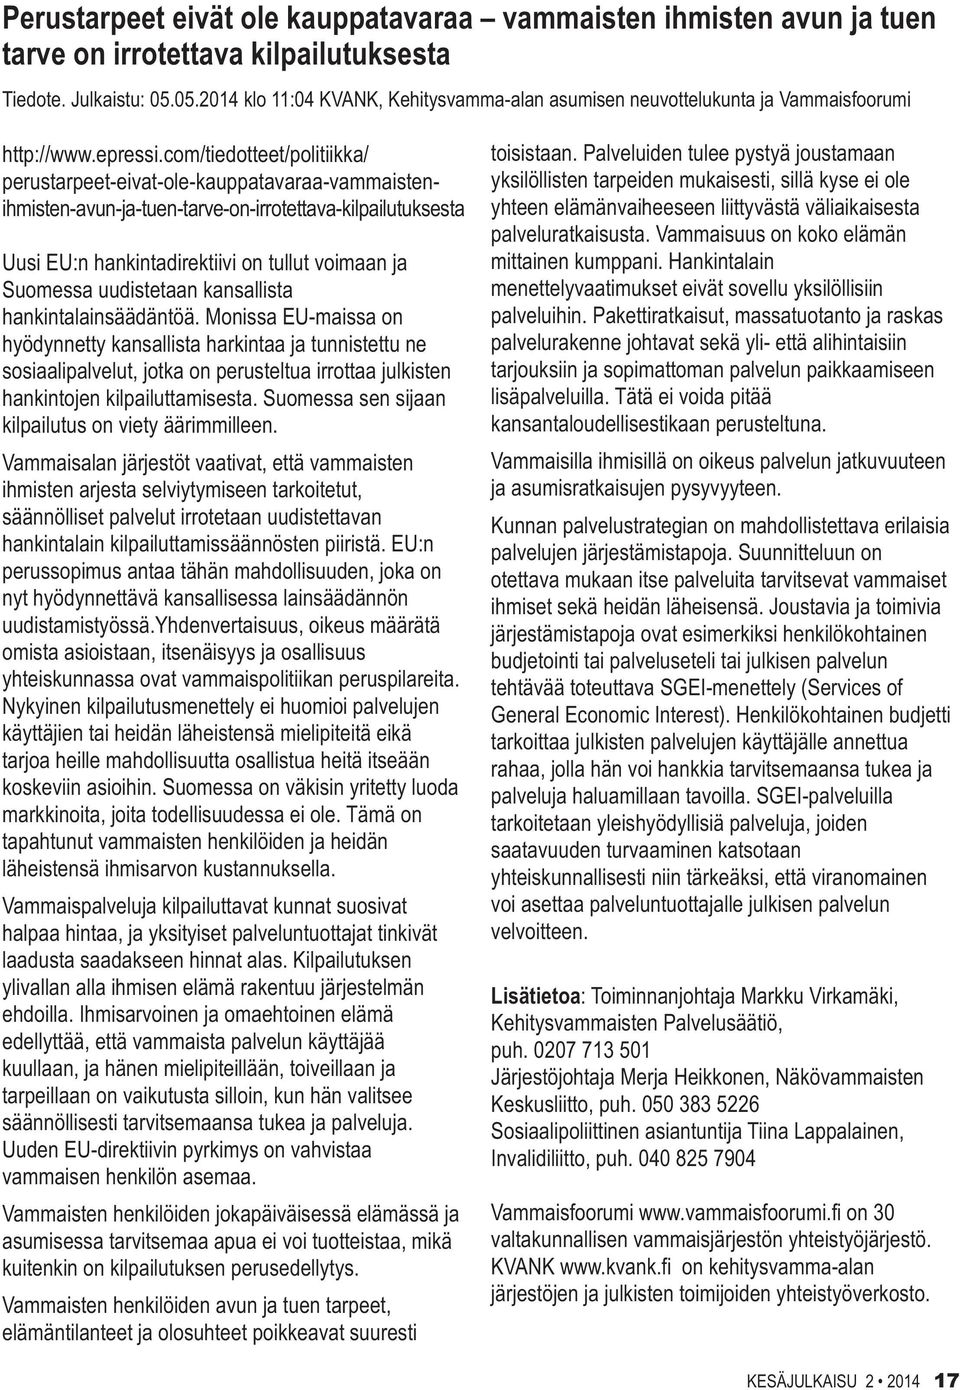 com/tiedotteet/politiikka/ perustarpeet-eivat-ole-kauppatavaraa-vammaistenihmisten-avun-ja-tuen-tarve-on-irrotettava-kilpailutuksesta Uusi EU:n hankintadirektiivi on tullut voimaan ja Suomessa